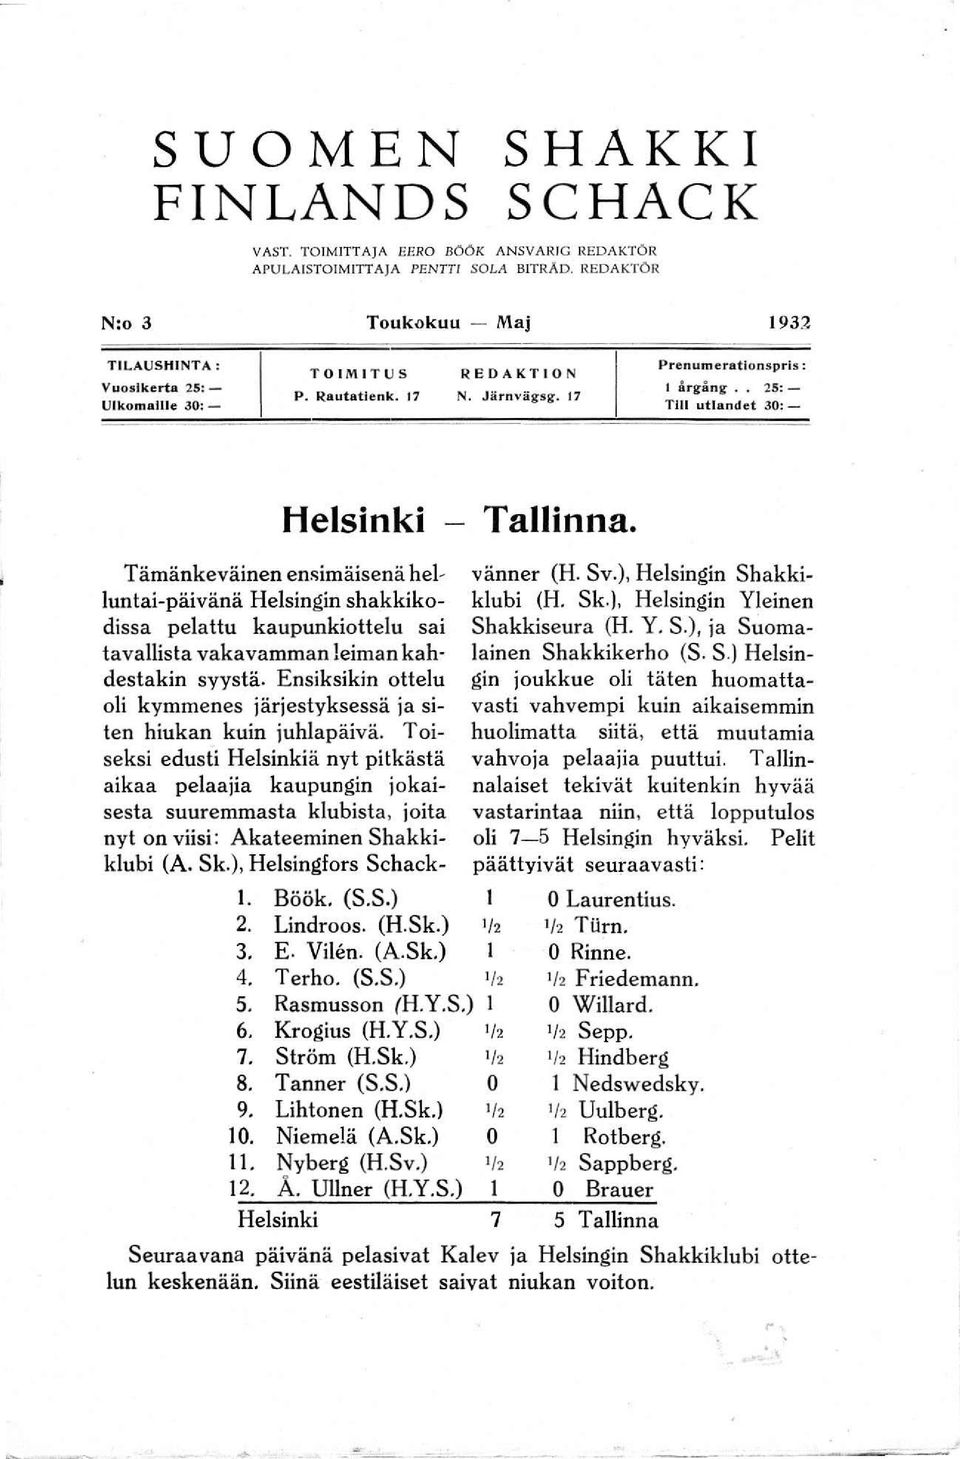 . 25: Tili utlandct 30:- Helsinki - Tallinna. L Böök. (S.S.) 2. Lindroos. (H.Sk.) ' /2 3. E. Vi!'m. (A.Sk) 1 4. Terho. (S.S.) '/' 5. Rasmusson (H.Y.S.) 1 6. Krogius (H.Y.S.) '/, 7. Ström (H.Sk.) '/, 8.